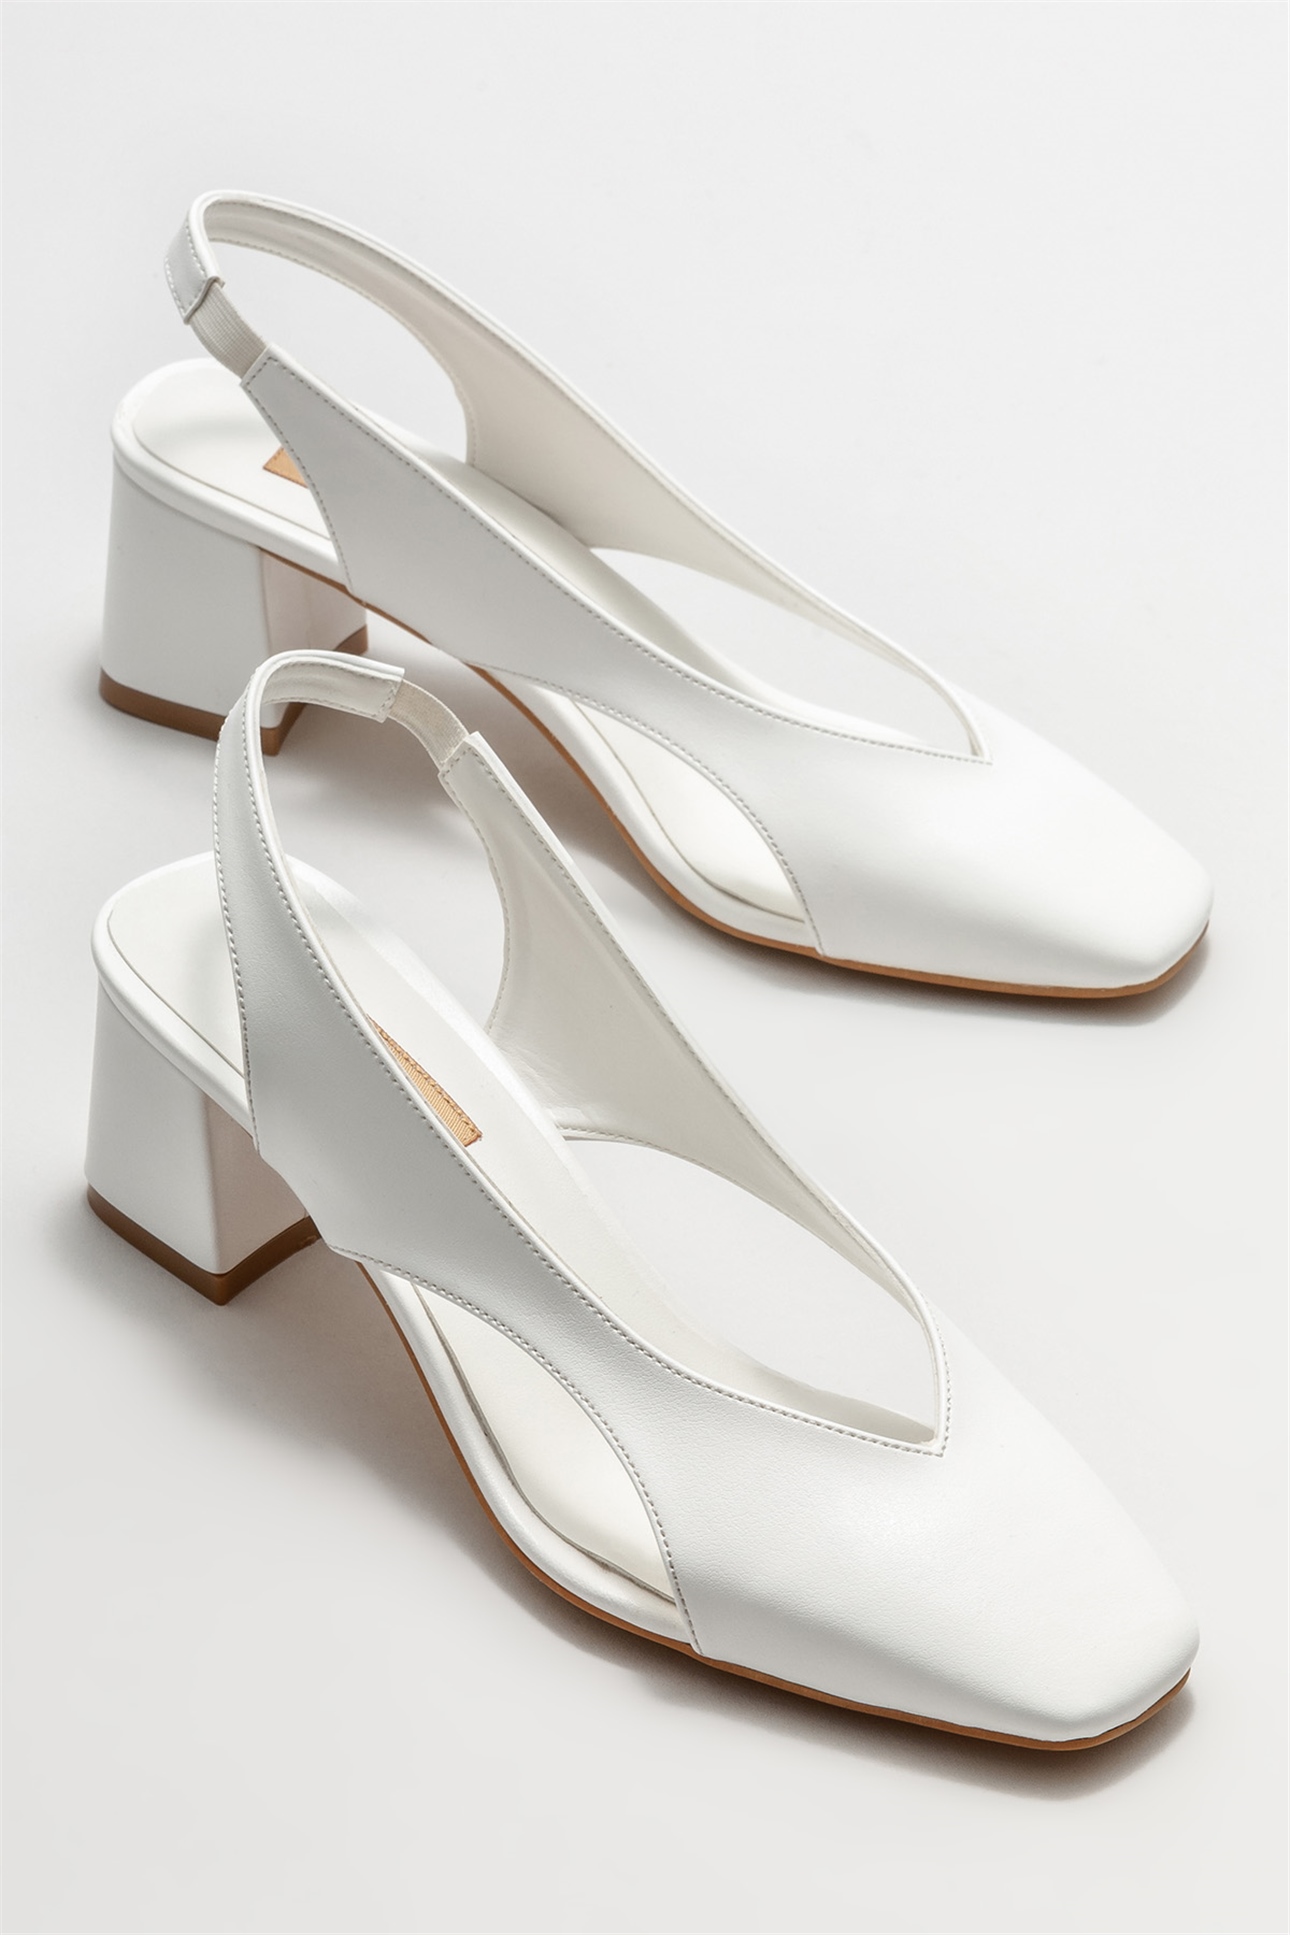 Beyaz Kadın Topuklu Ayakkabı Satın Al! FOLADE-02 Fiyatı | Elle Shoes